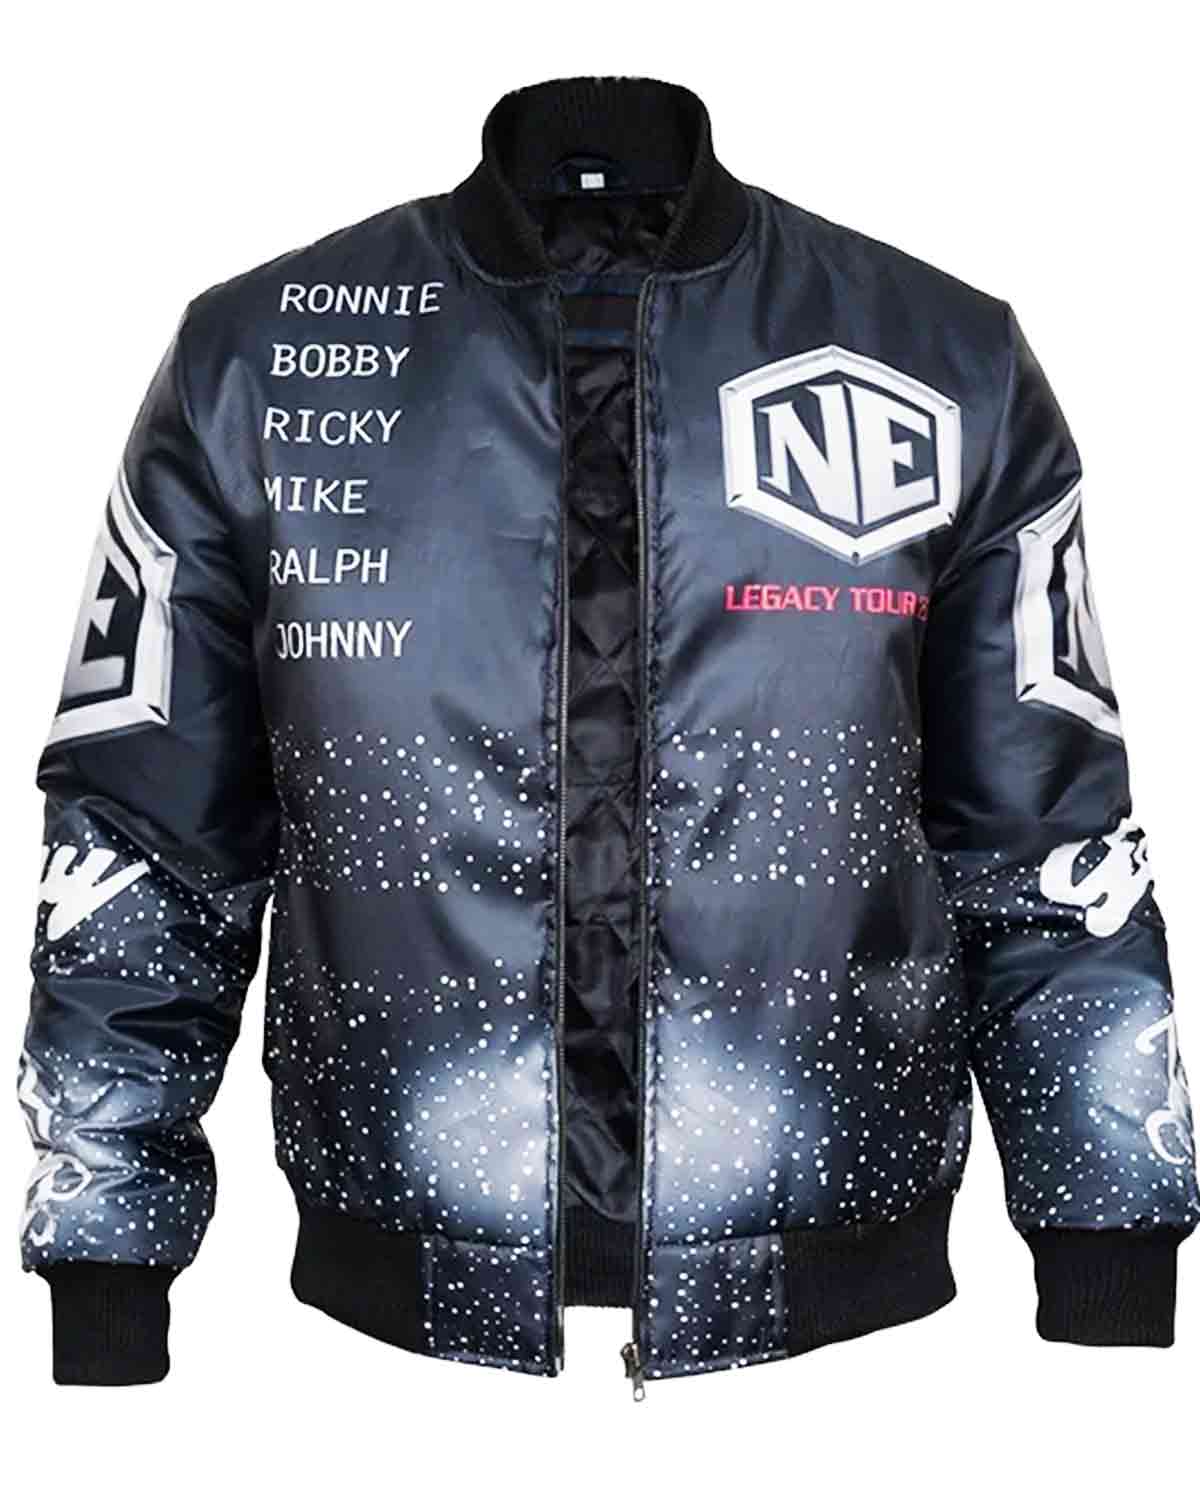 Elite Legacy Tour New Edition Jacket